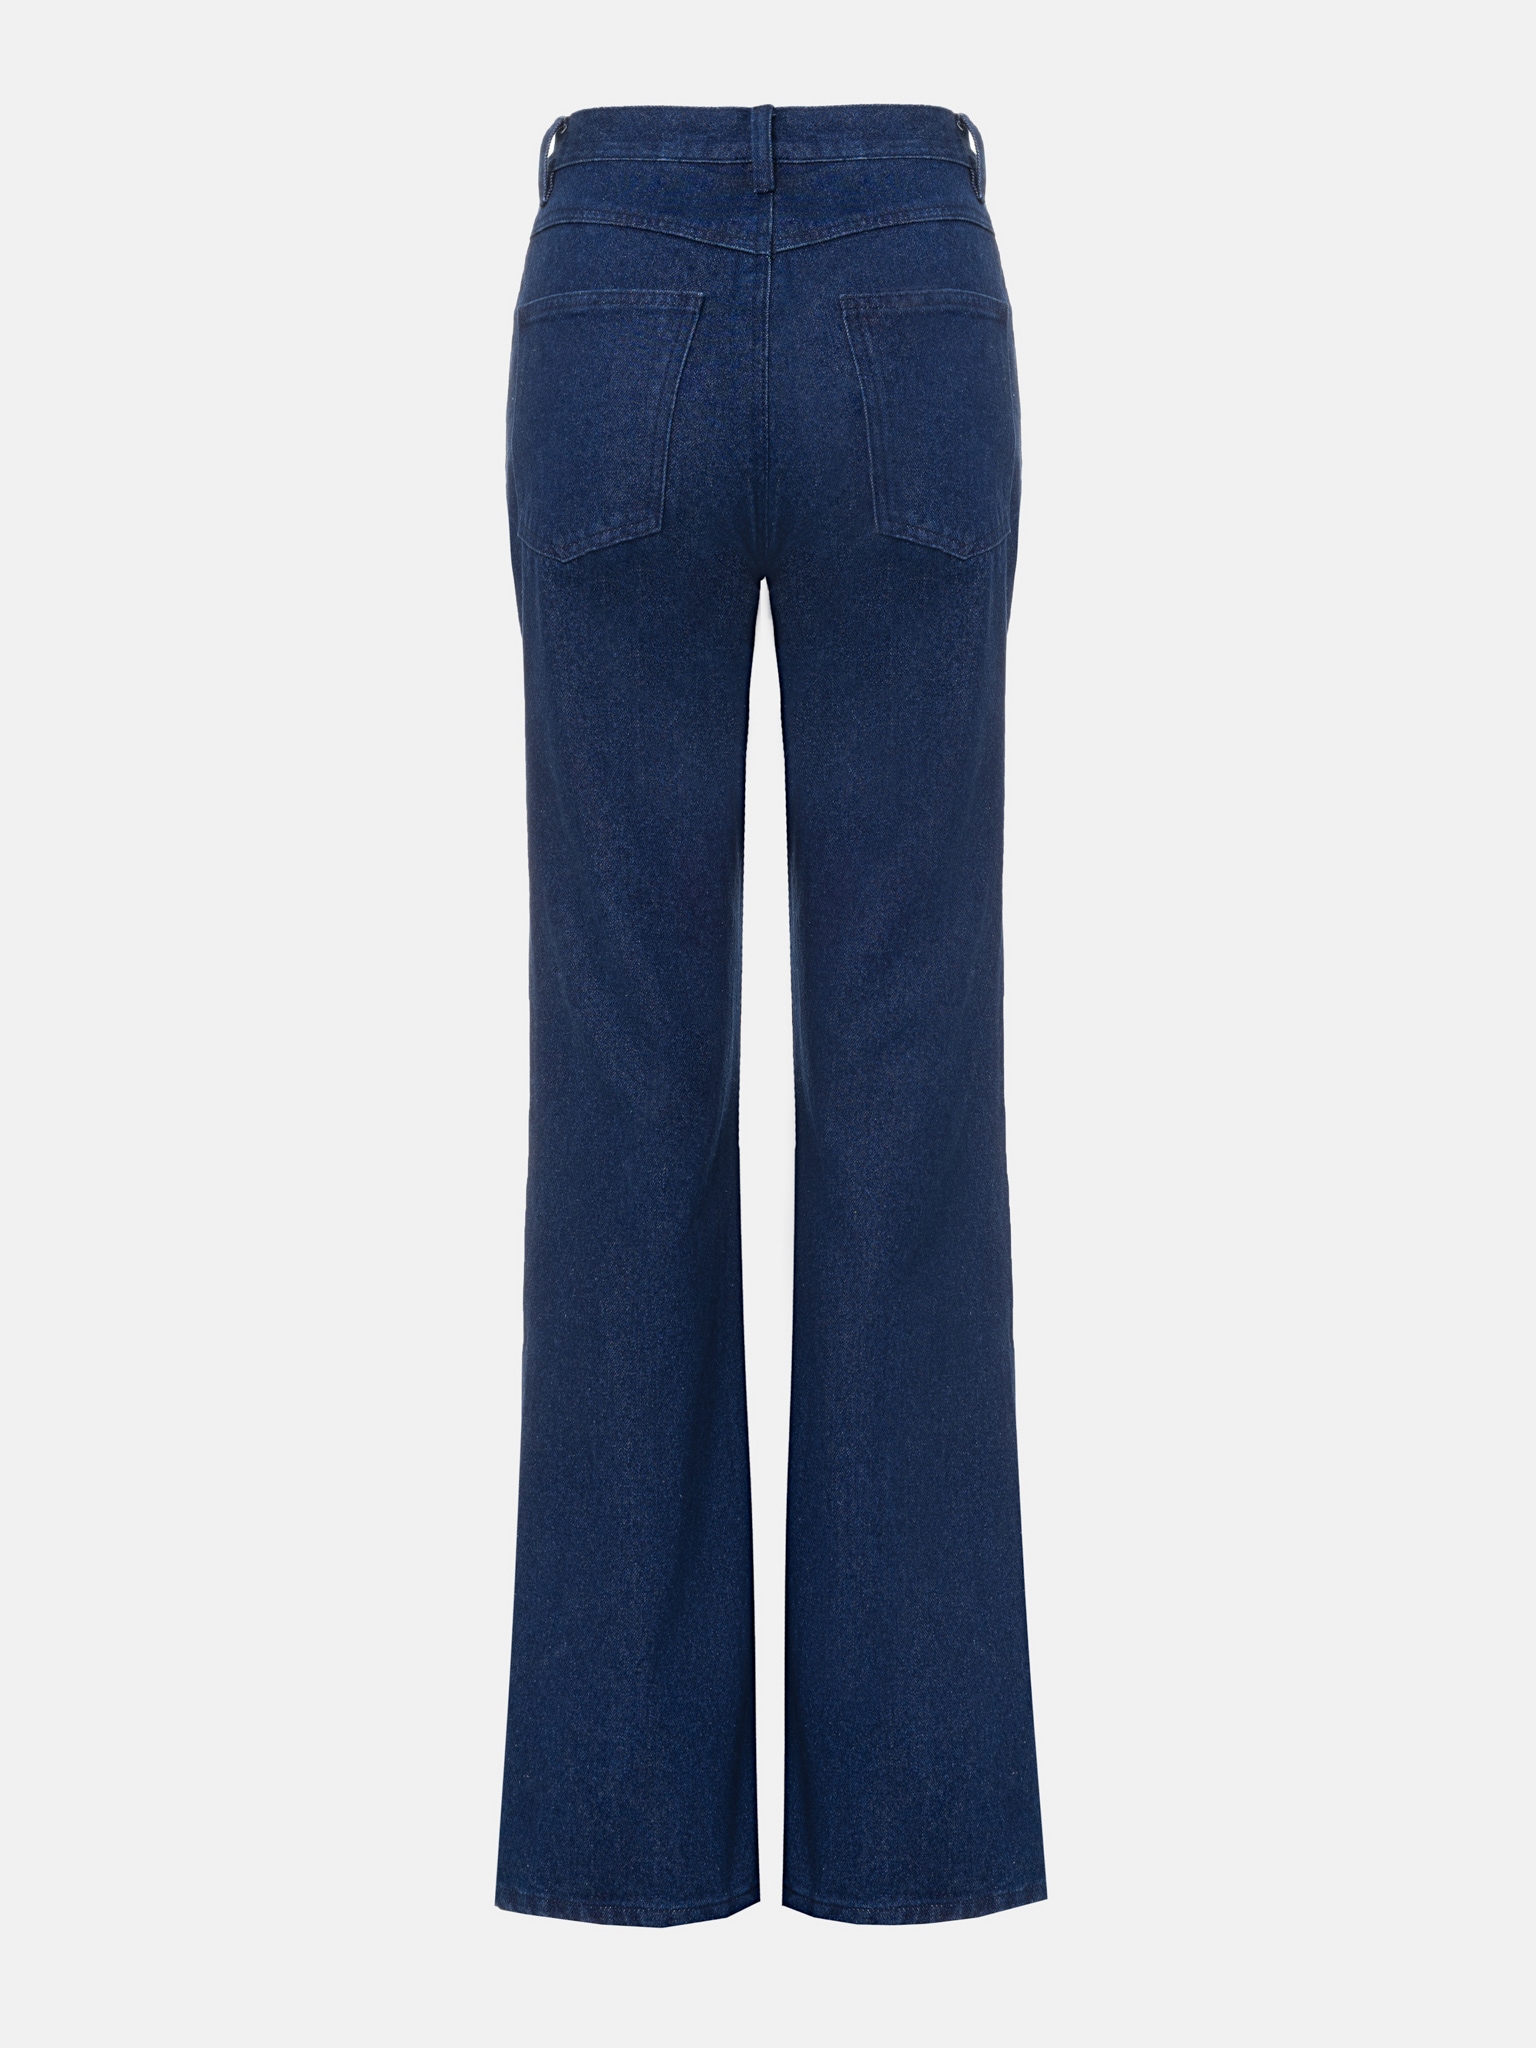 Расклешенные джинсы с прямоугольными карманами